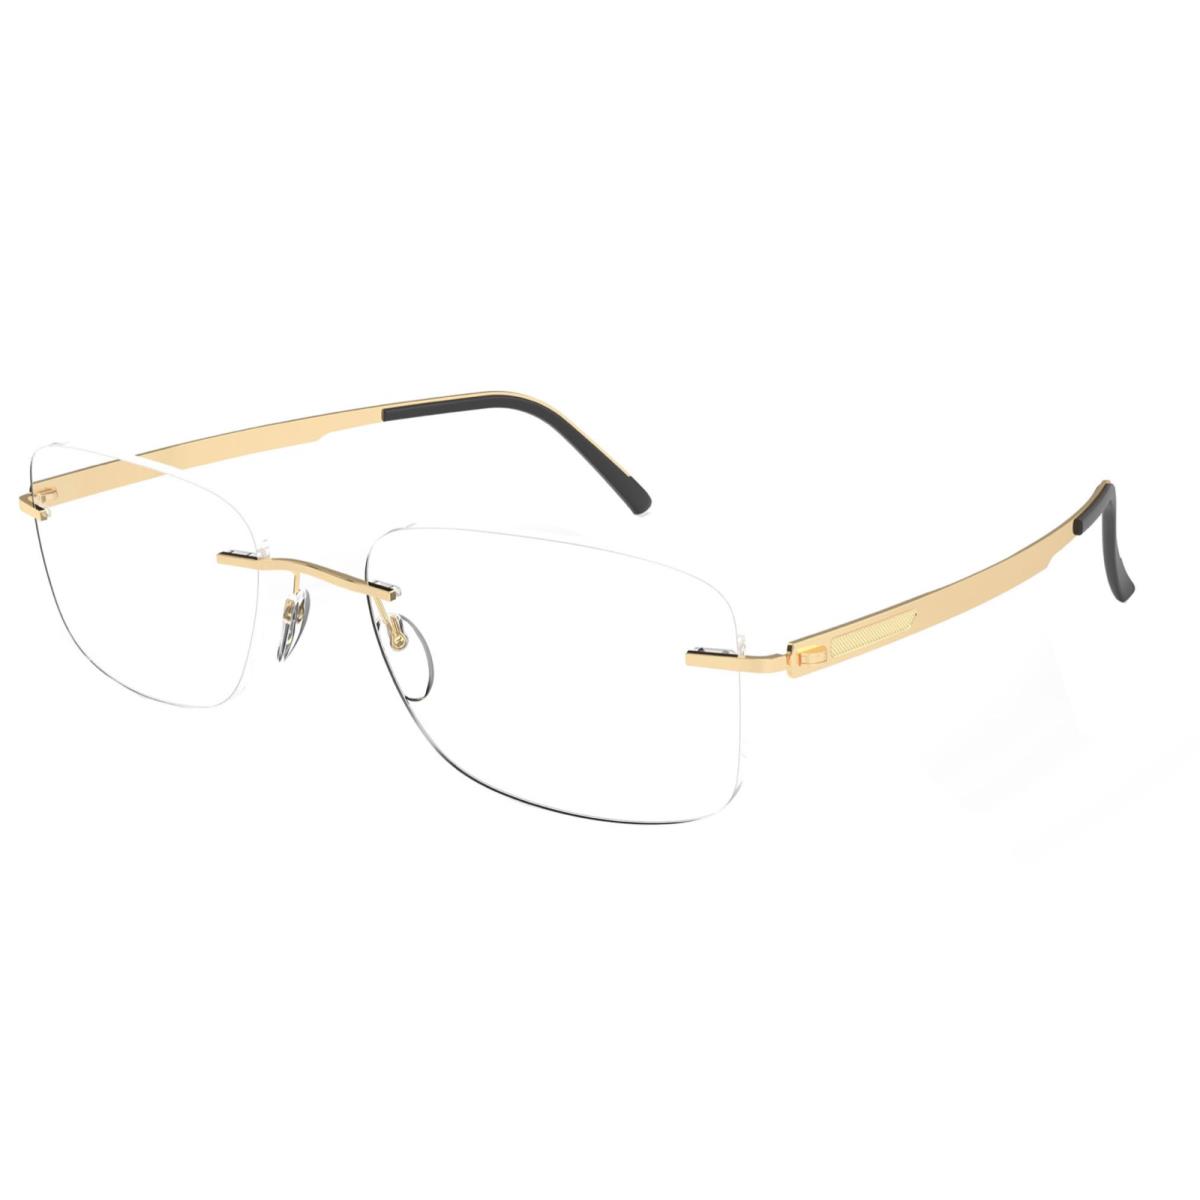 Silhouette Rimless Eyeglasses Venture 5554 KA 7520 55 23kt Gold Plated Frame